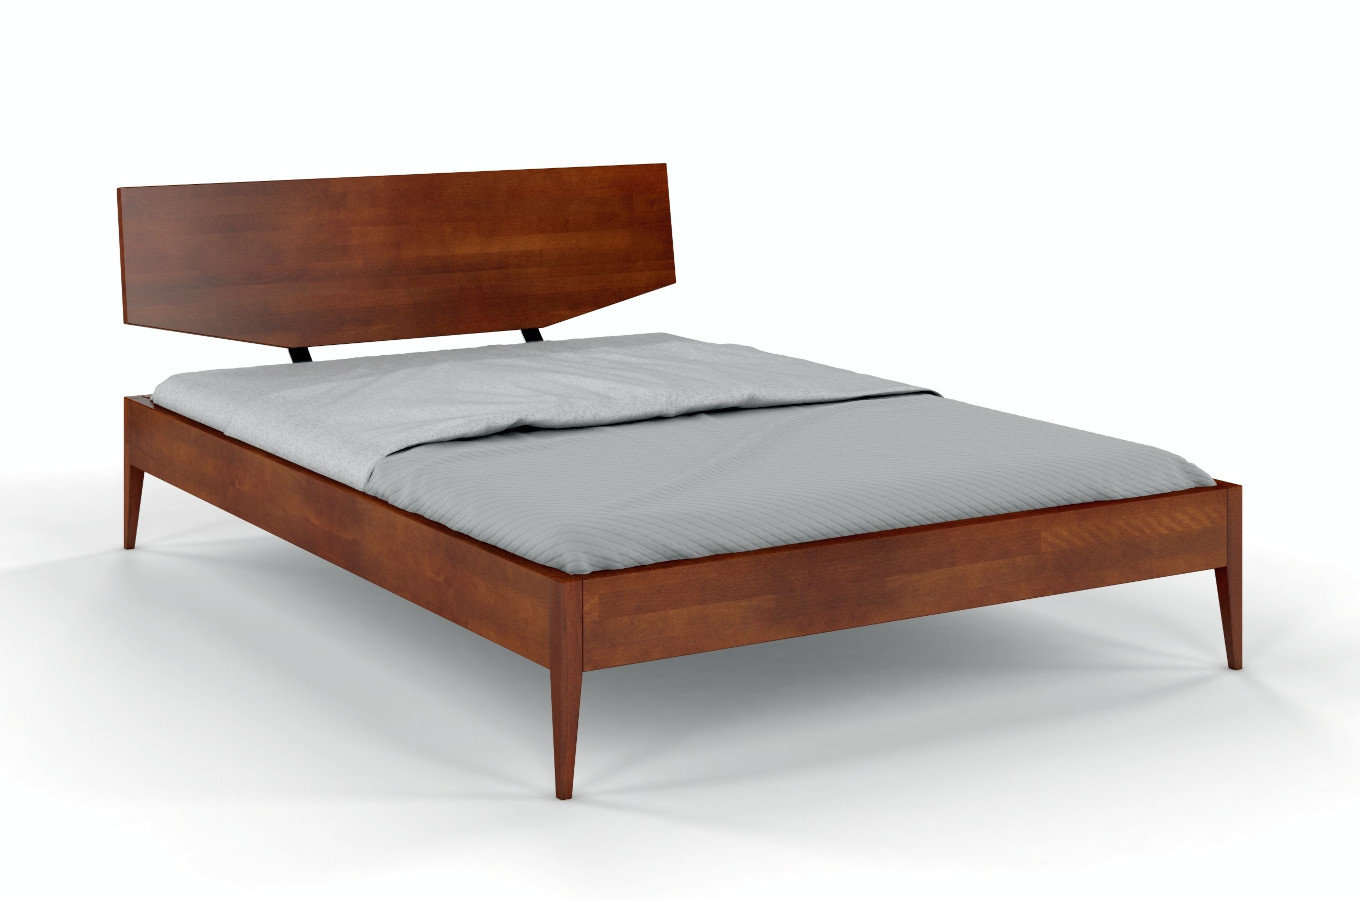 Łóżko drewniane bukowe Skandica SUND / 160x200 cm, kolor orzech